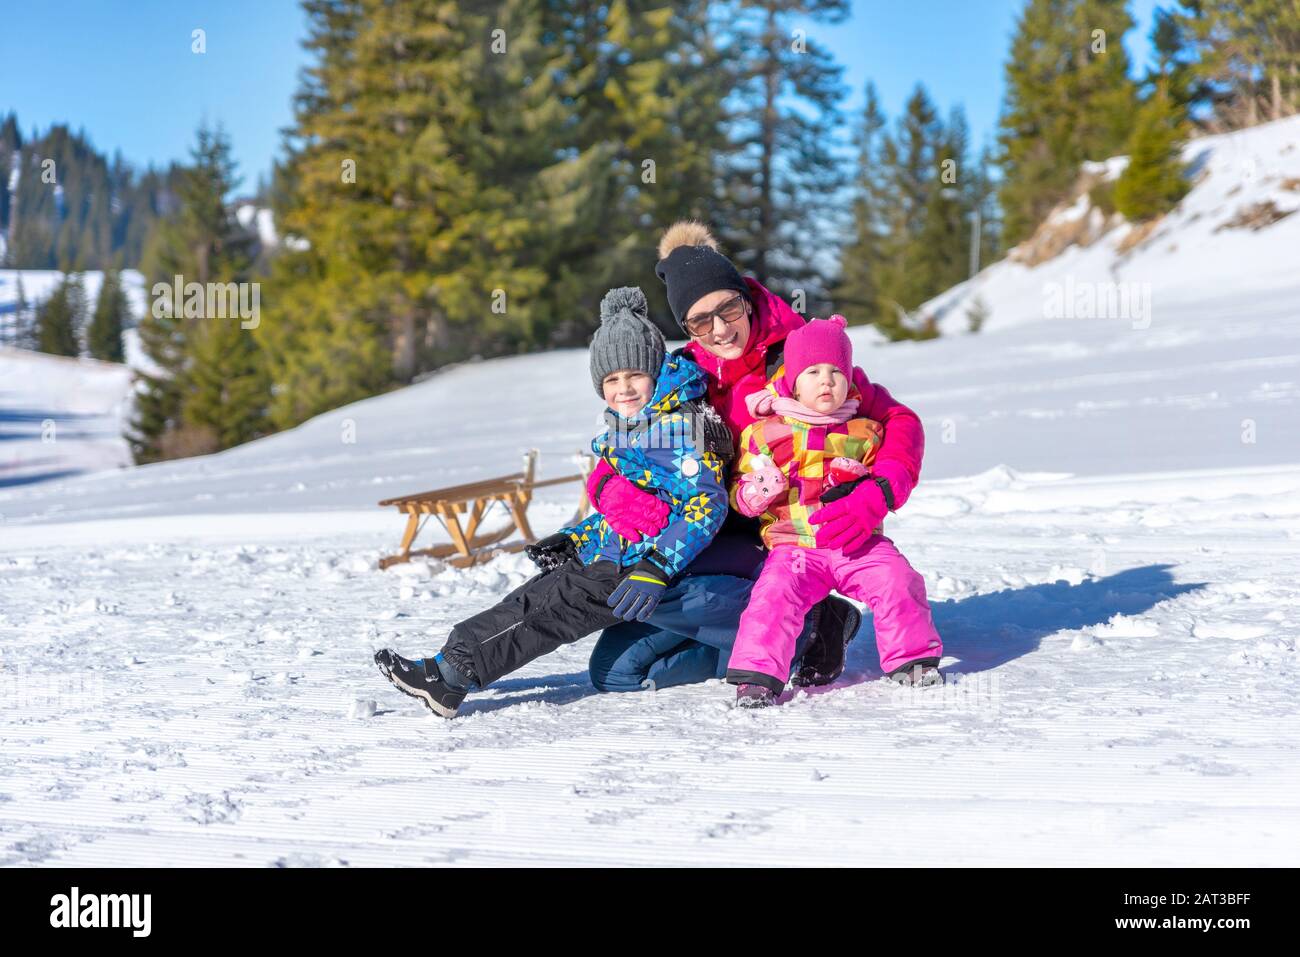 La madre sostiene a los niños en sus brazos sobre la nieve. Concepto de unas vacaciones de invierno y una familia feliz Foto de stock